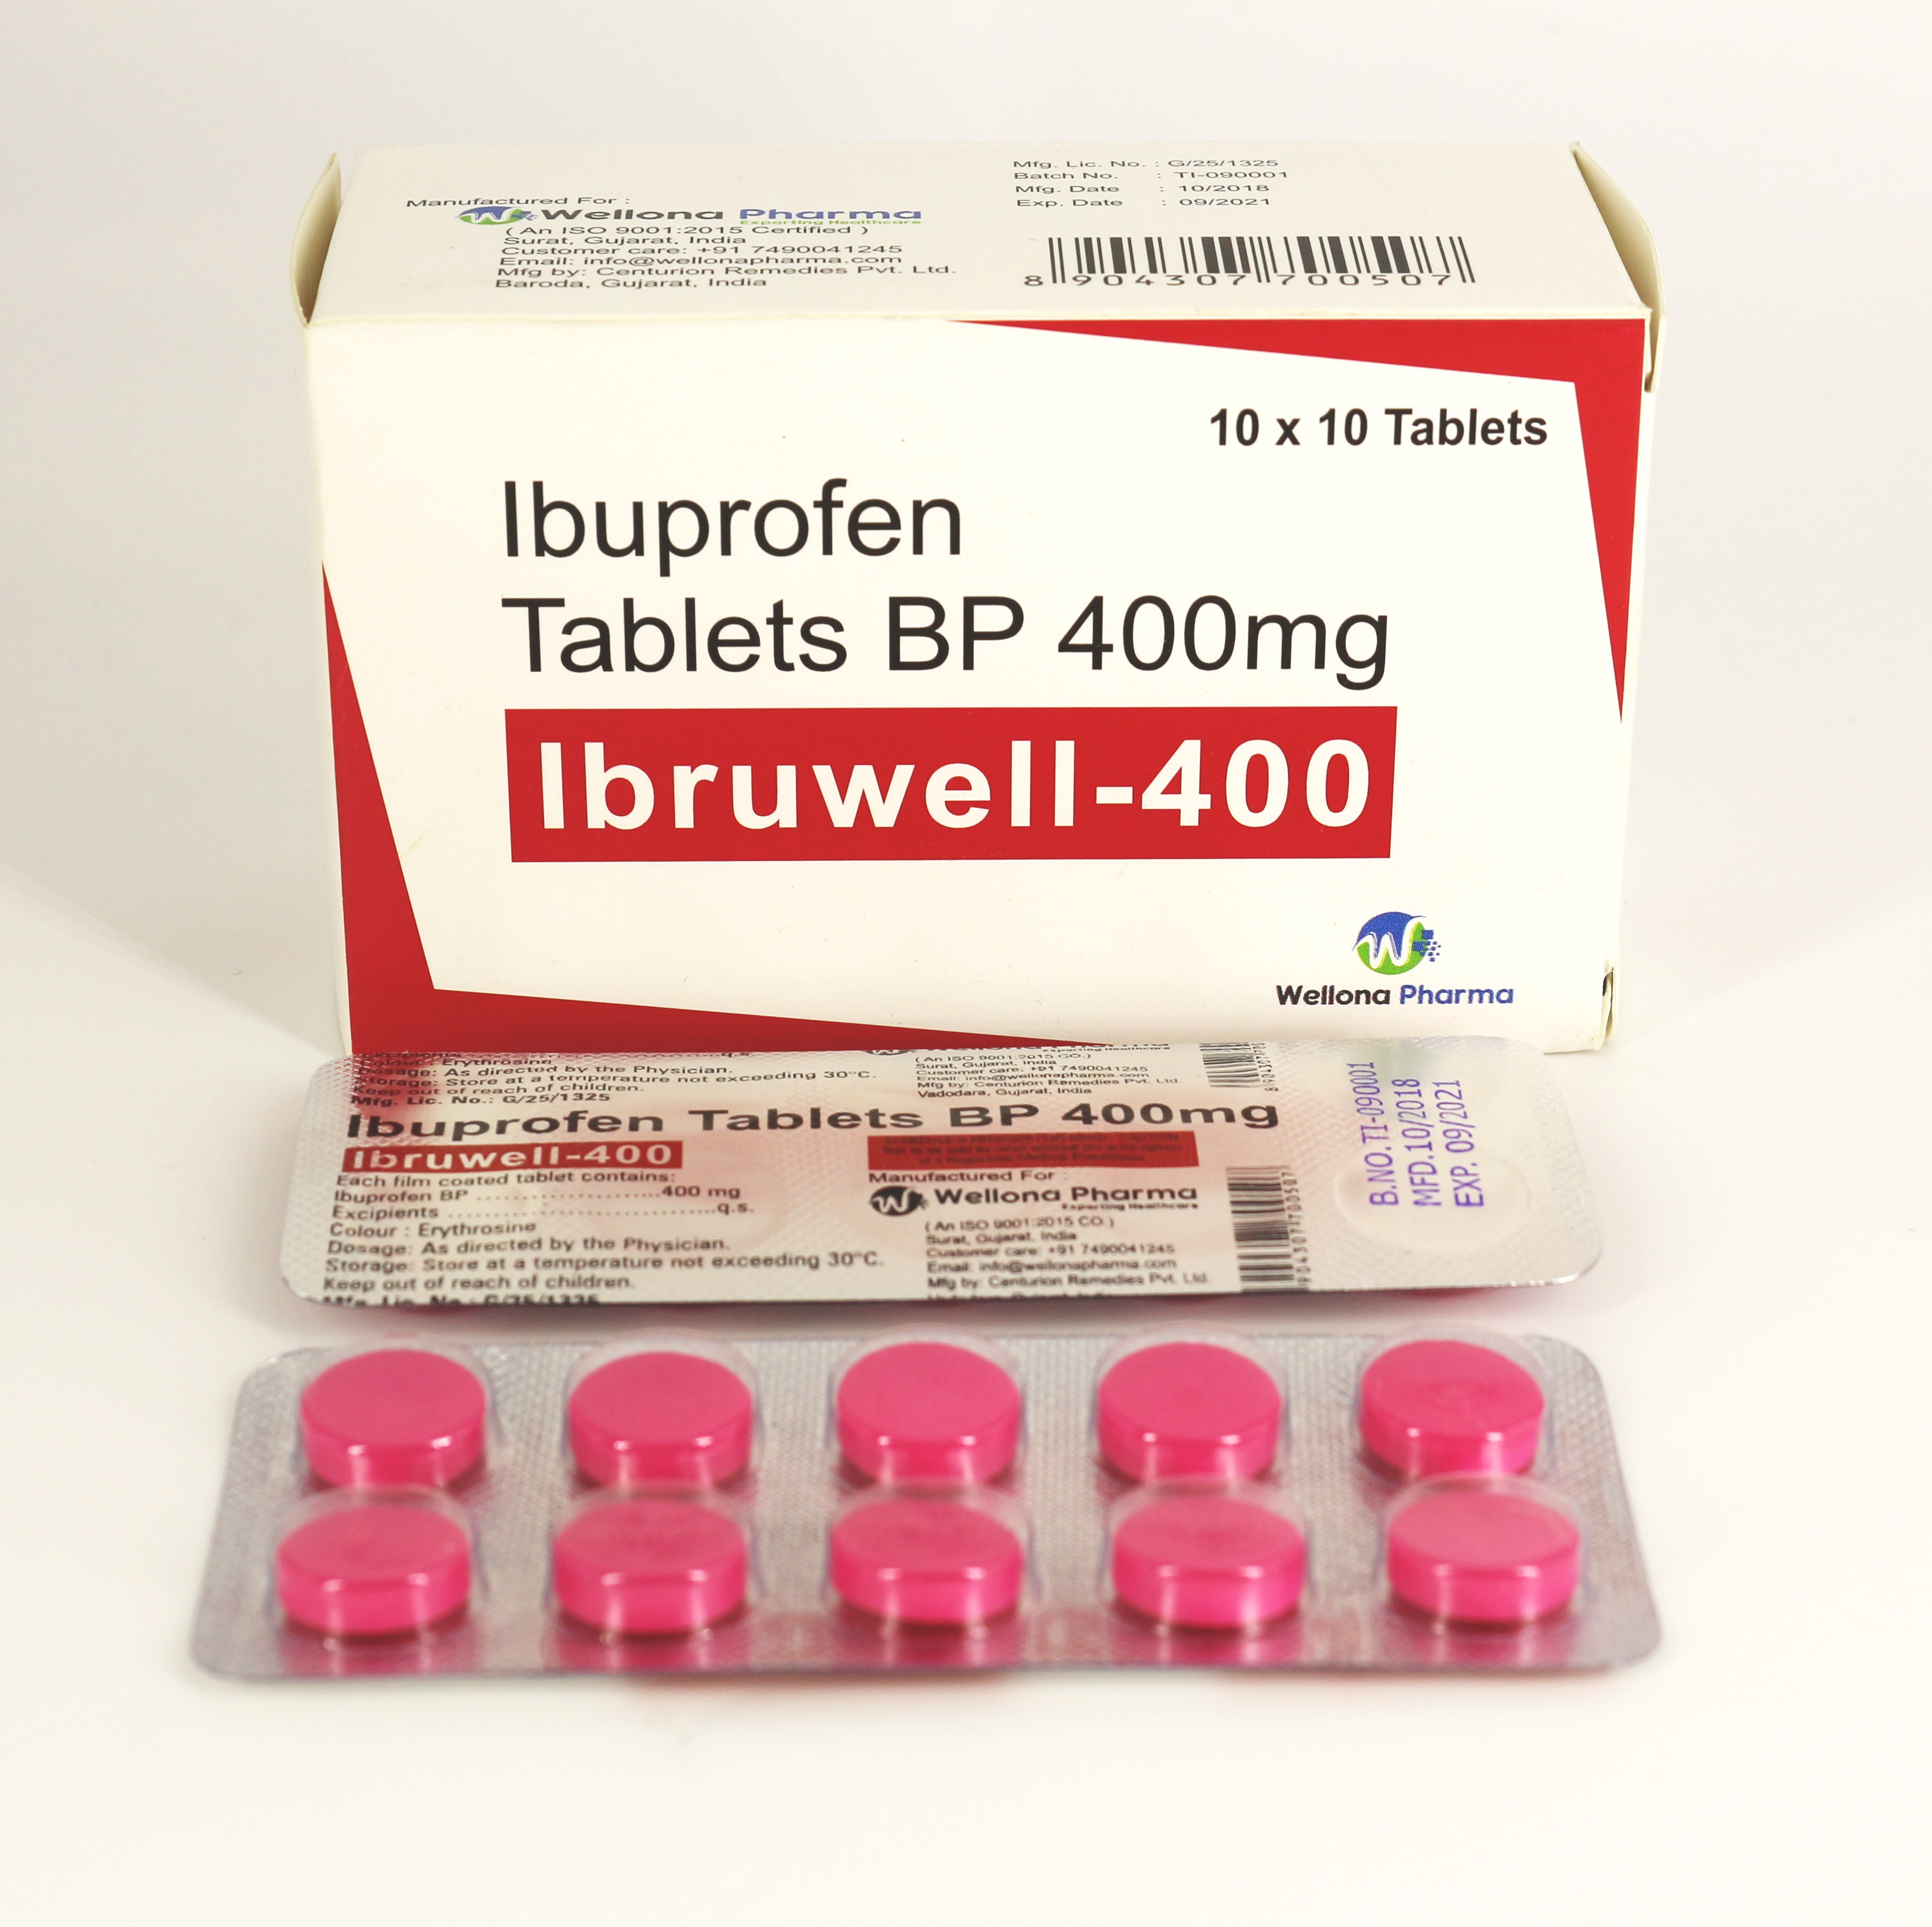 Ибупрофен 400 купить. Ibuprofen 400 MG Tablets. Ибупрофен 400 Индия. Ибупрофен таблетки производители 400 мг. Ибупрофен производитель.